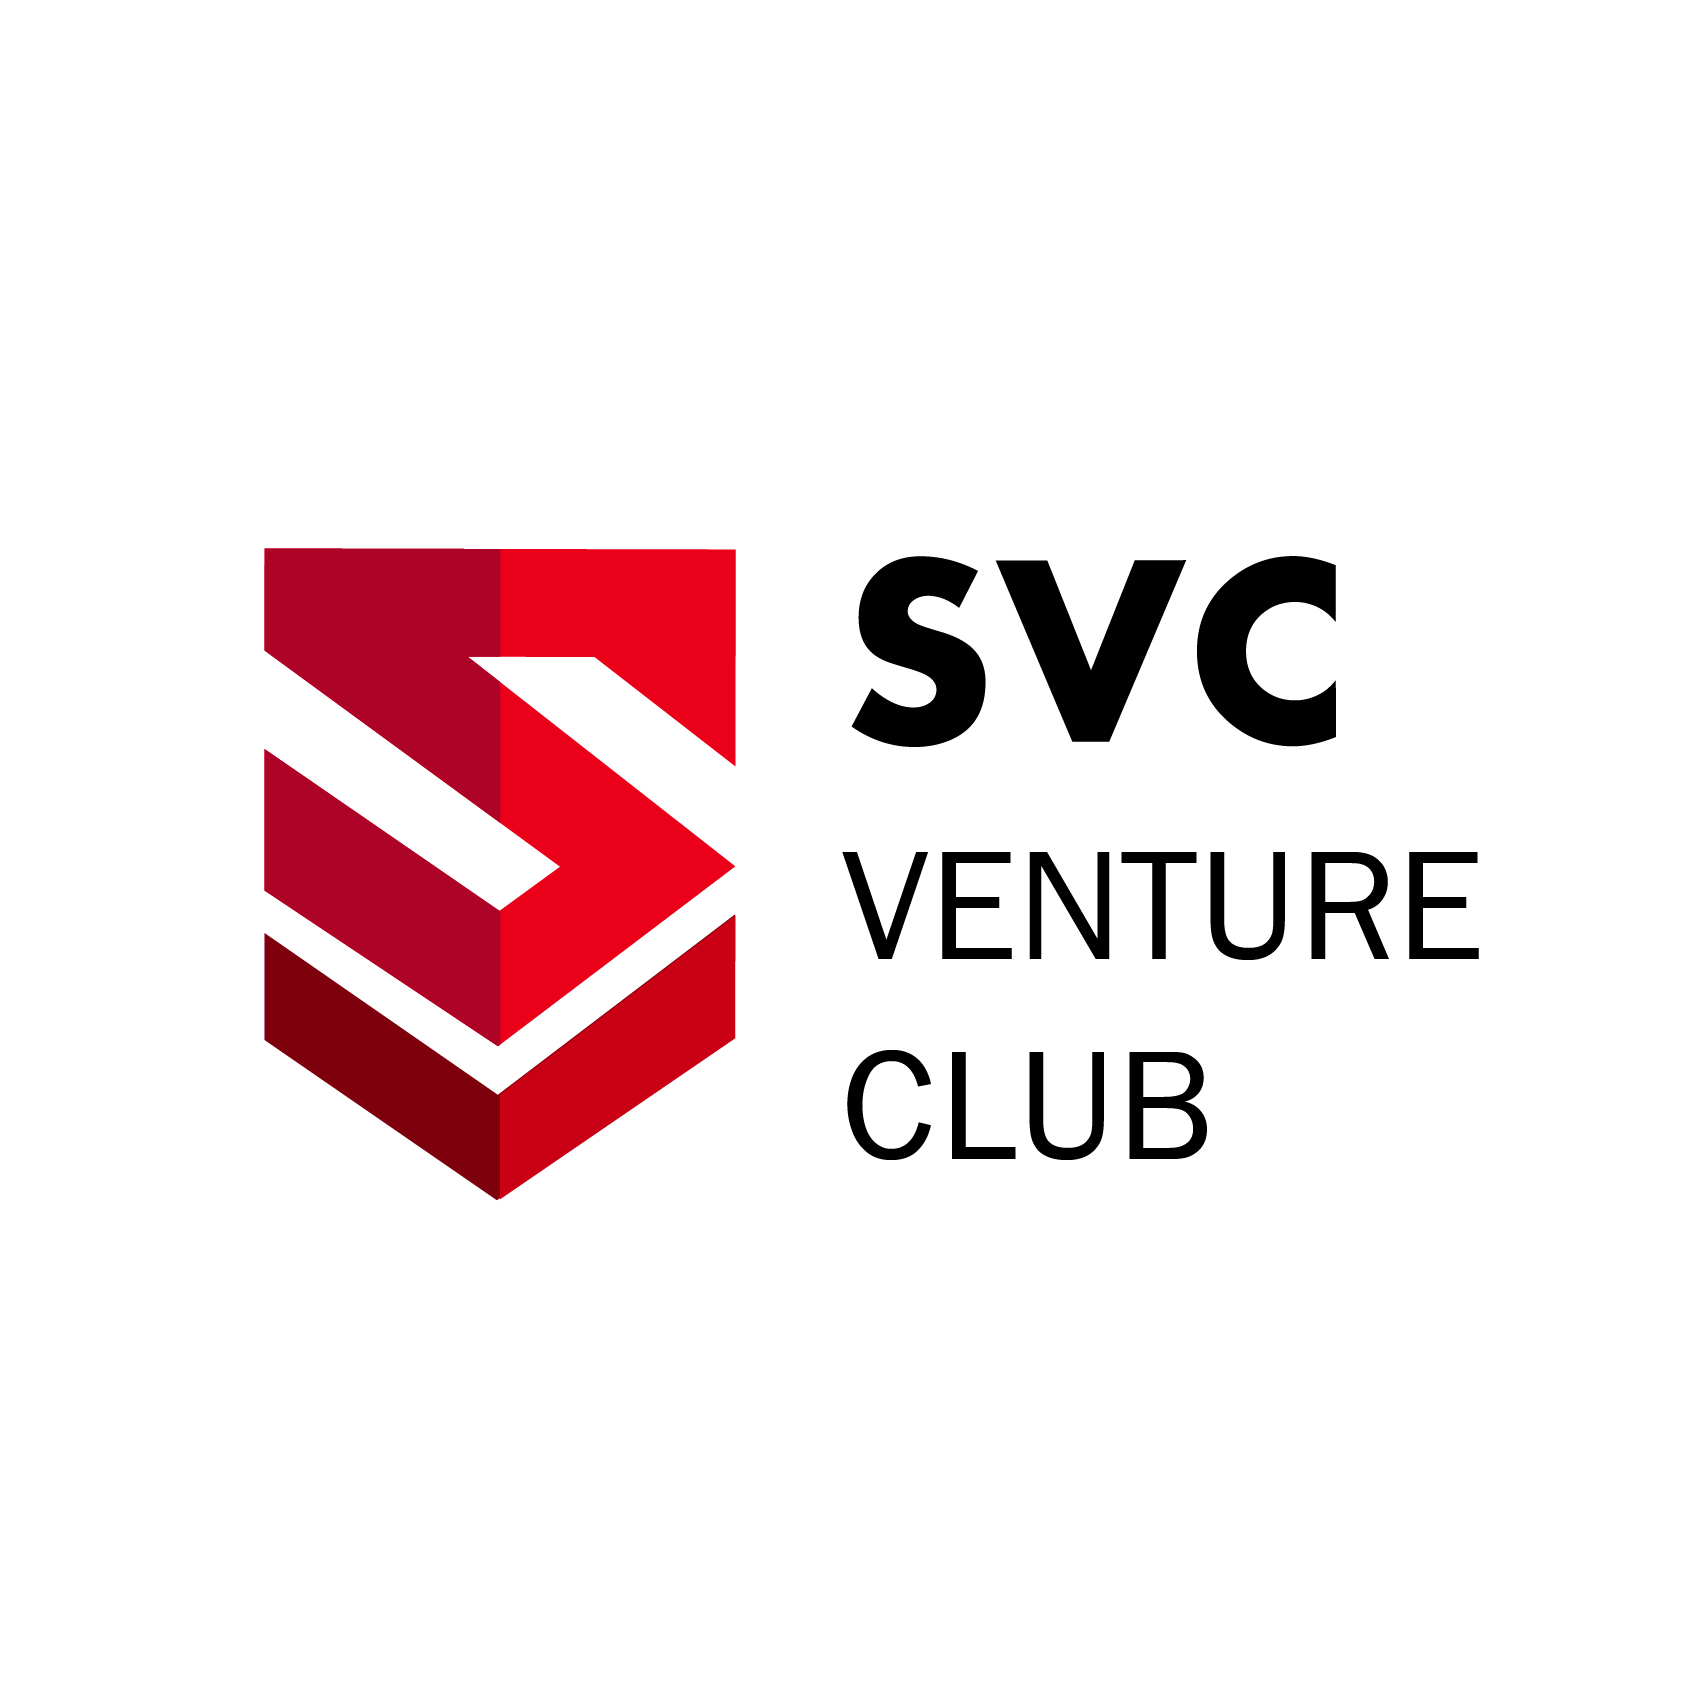 SVC Venture Club